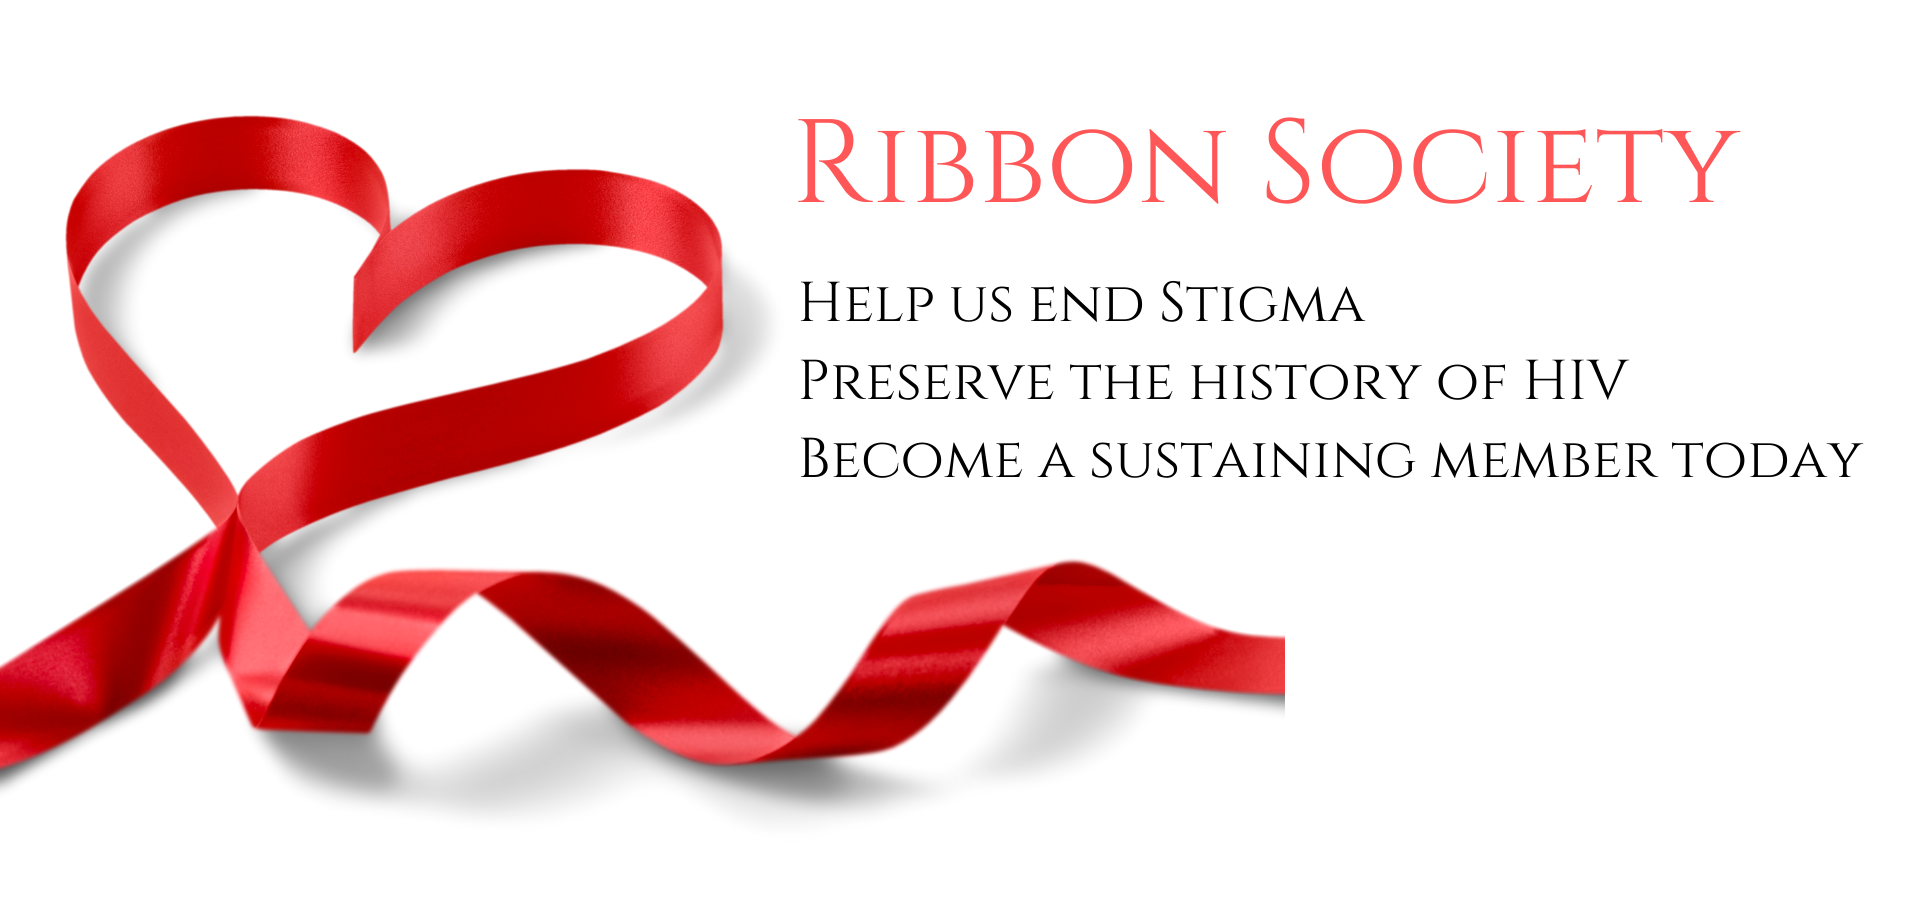 Ribbon Society Image